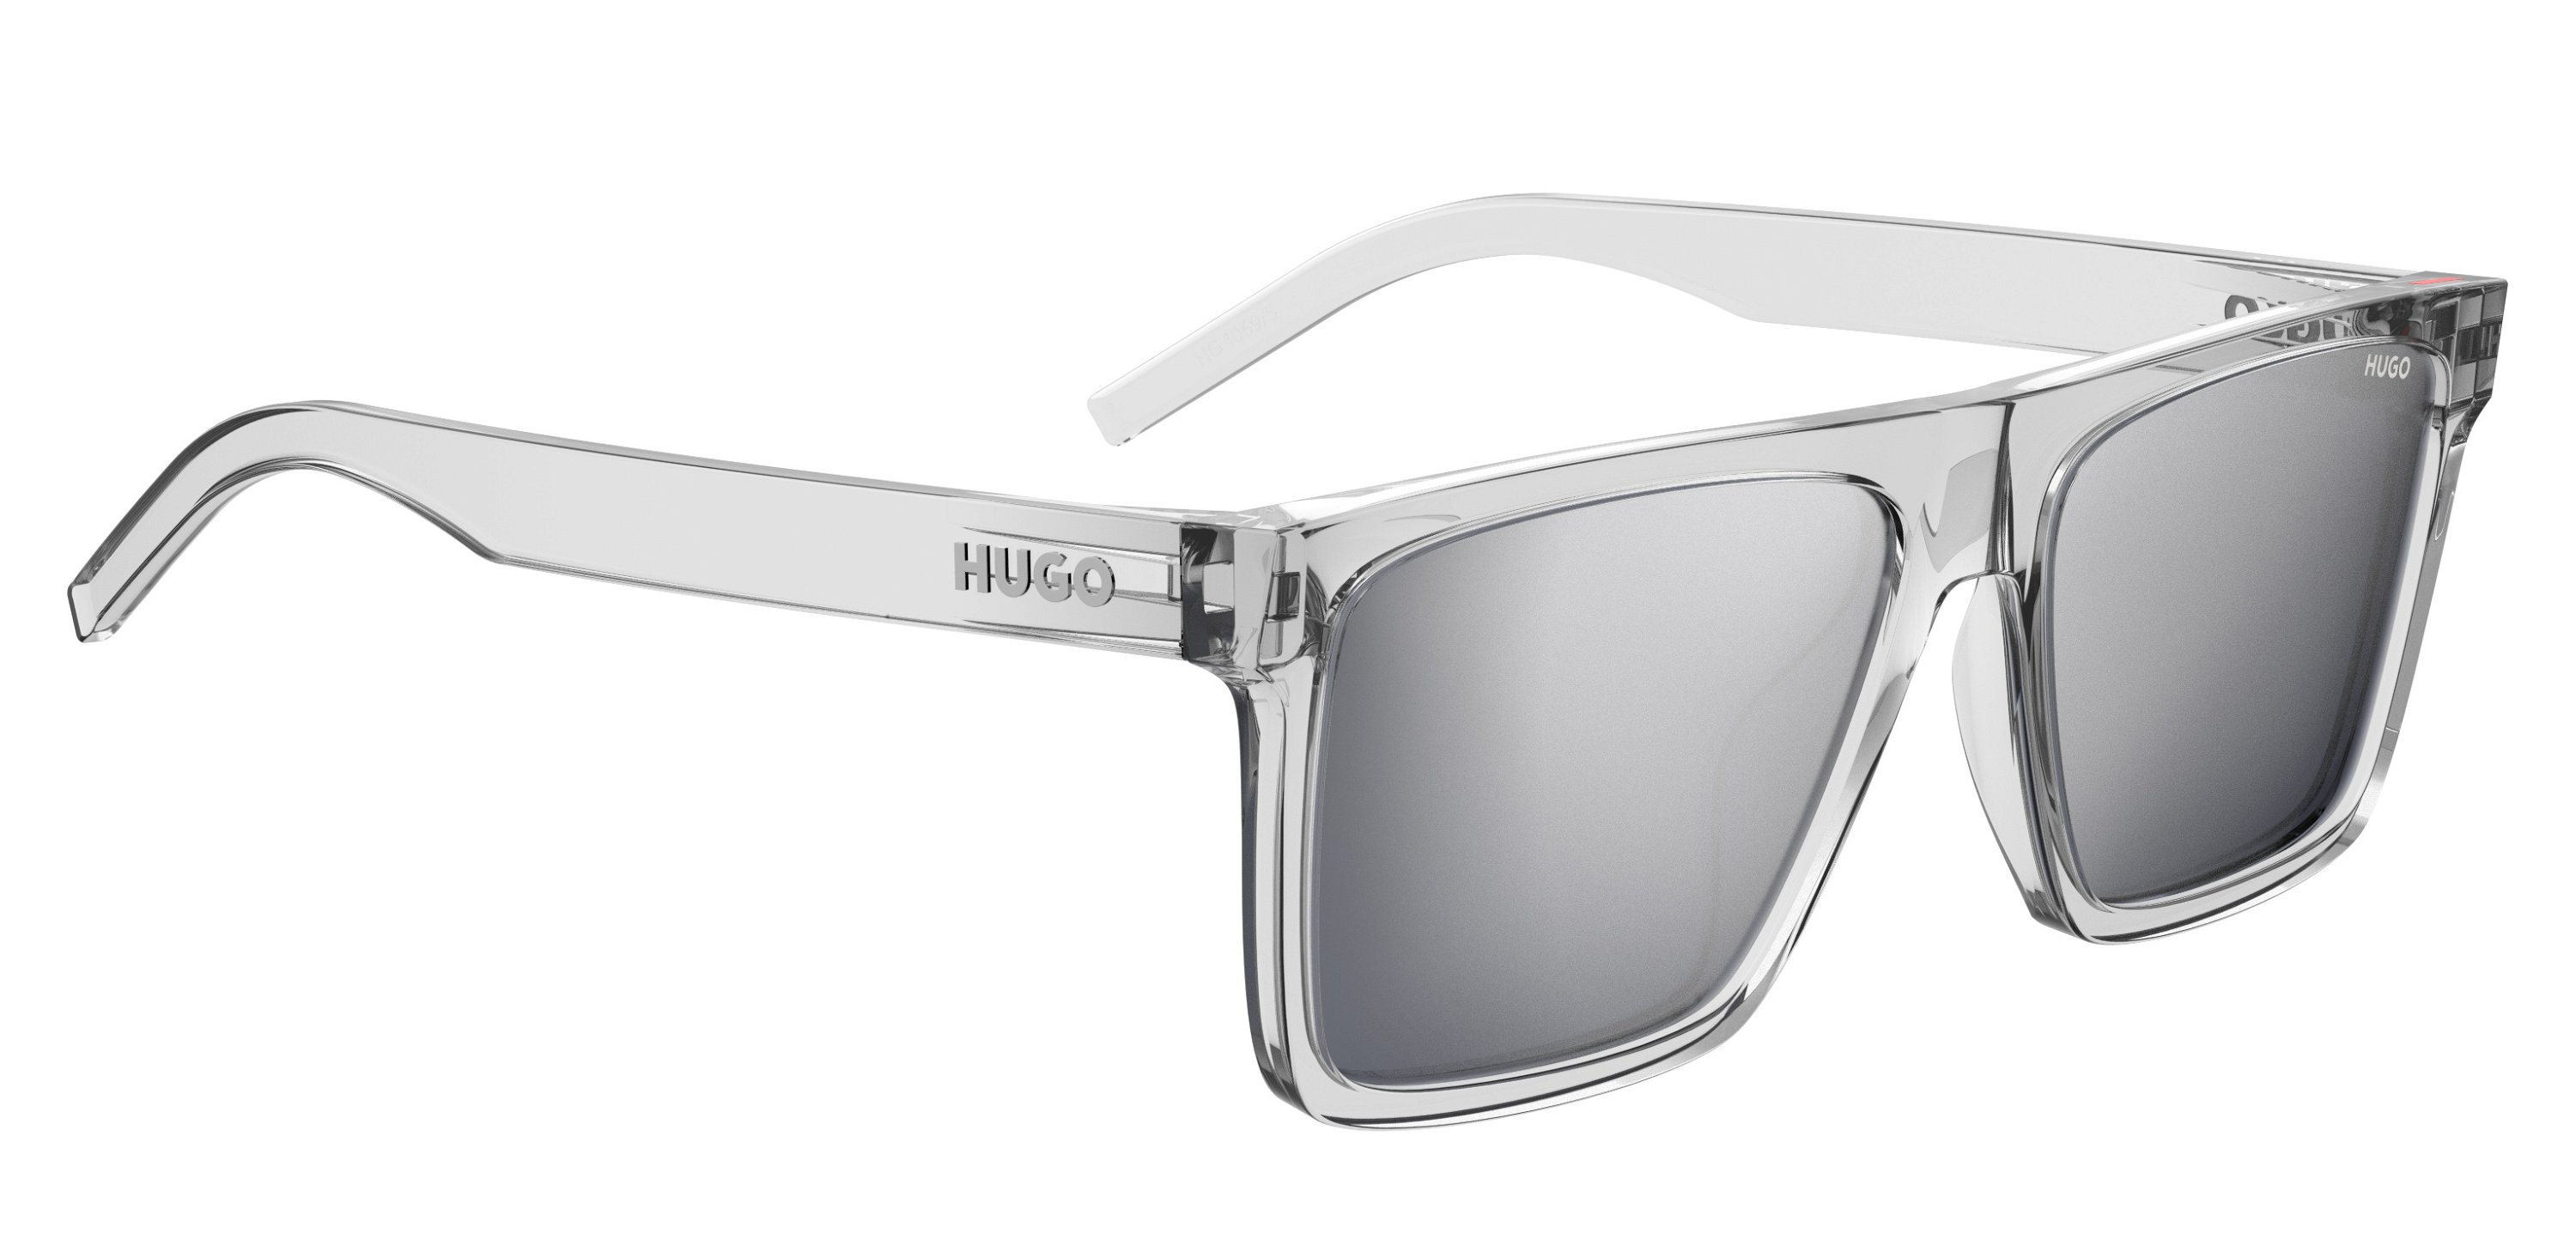 Das Bild zeigt die Sonnenbrille HG1069/S 900 von der Marke Hugo in crystal.